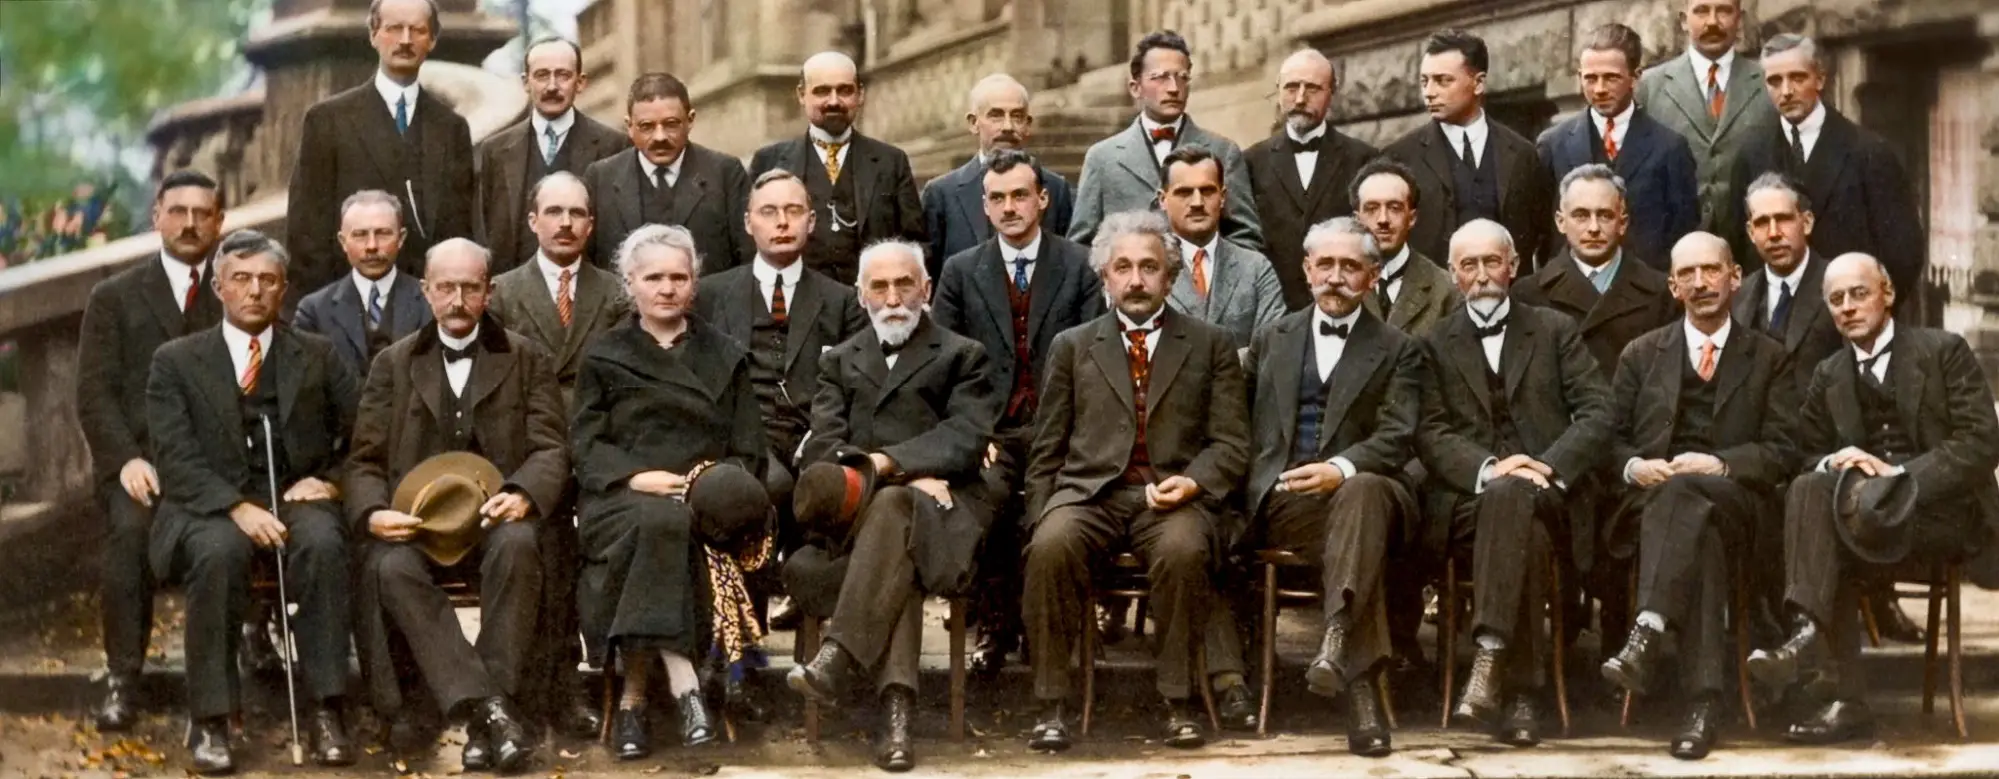 La Conferencia Solvay de 1927 y la fotografía de algunas de las personas más inteligentes de la historia